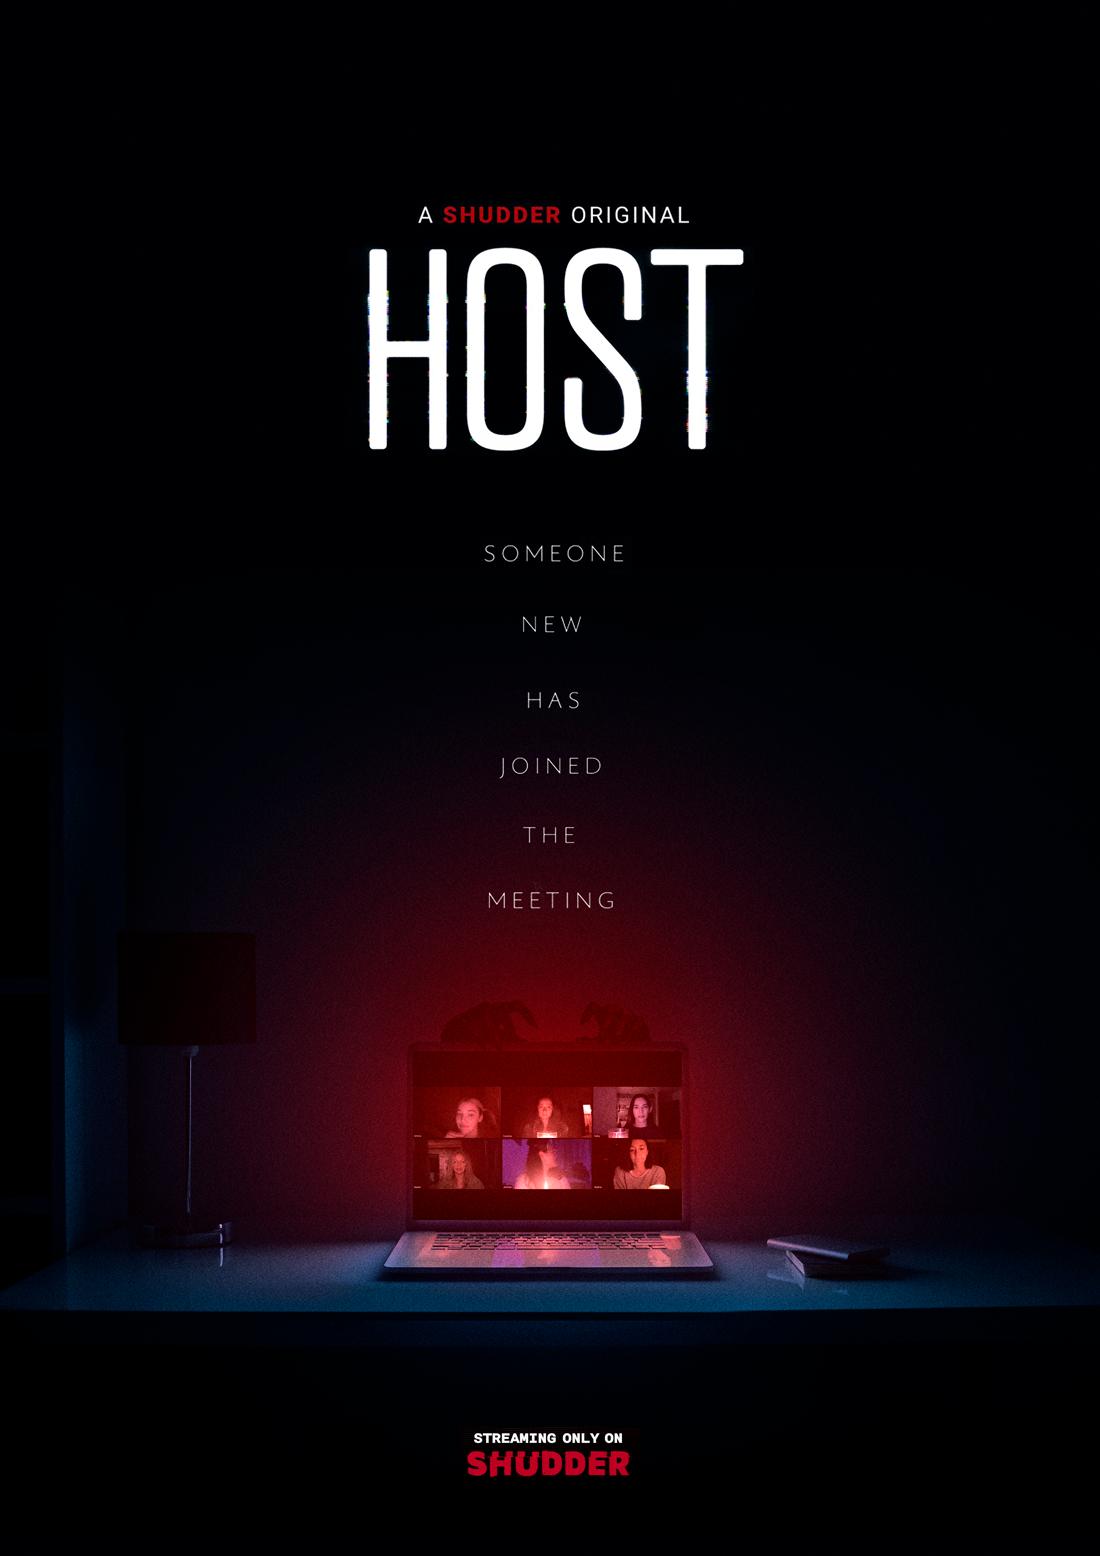 میزبان (Host)